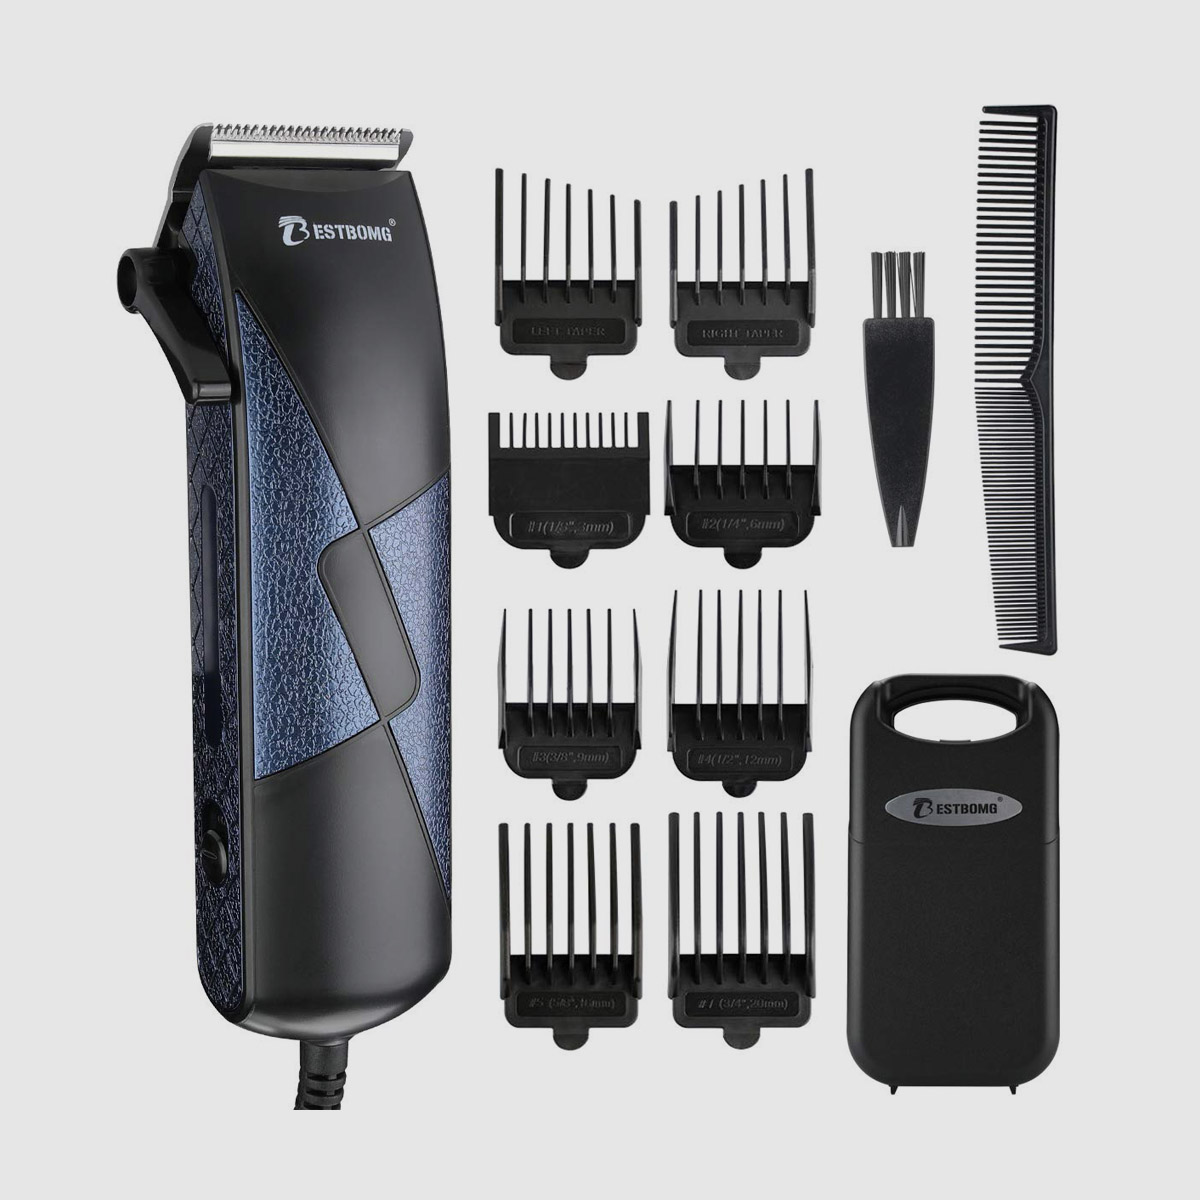 Professional Hair Trimmer Grooming Kit for Men